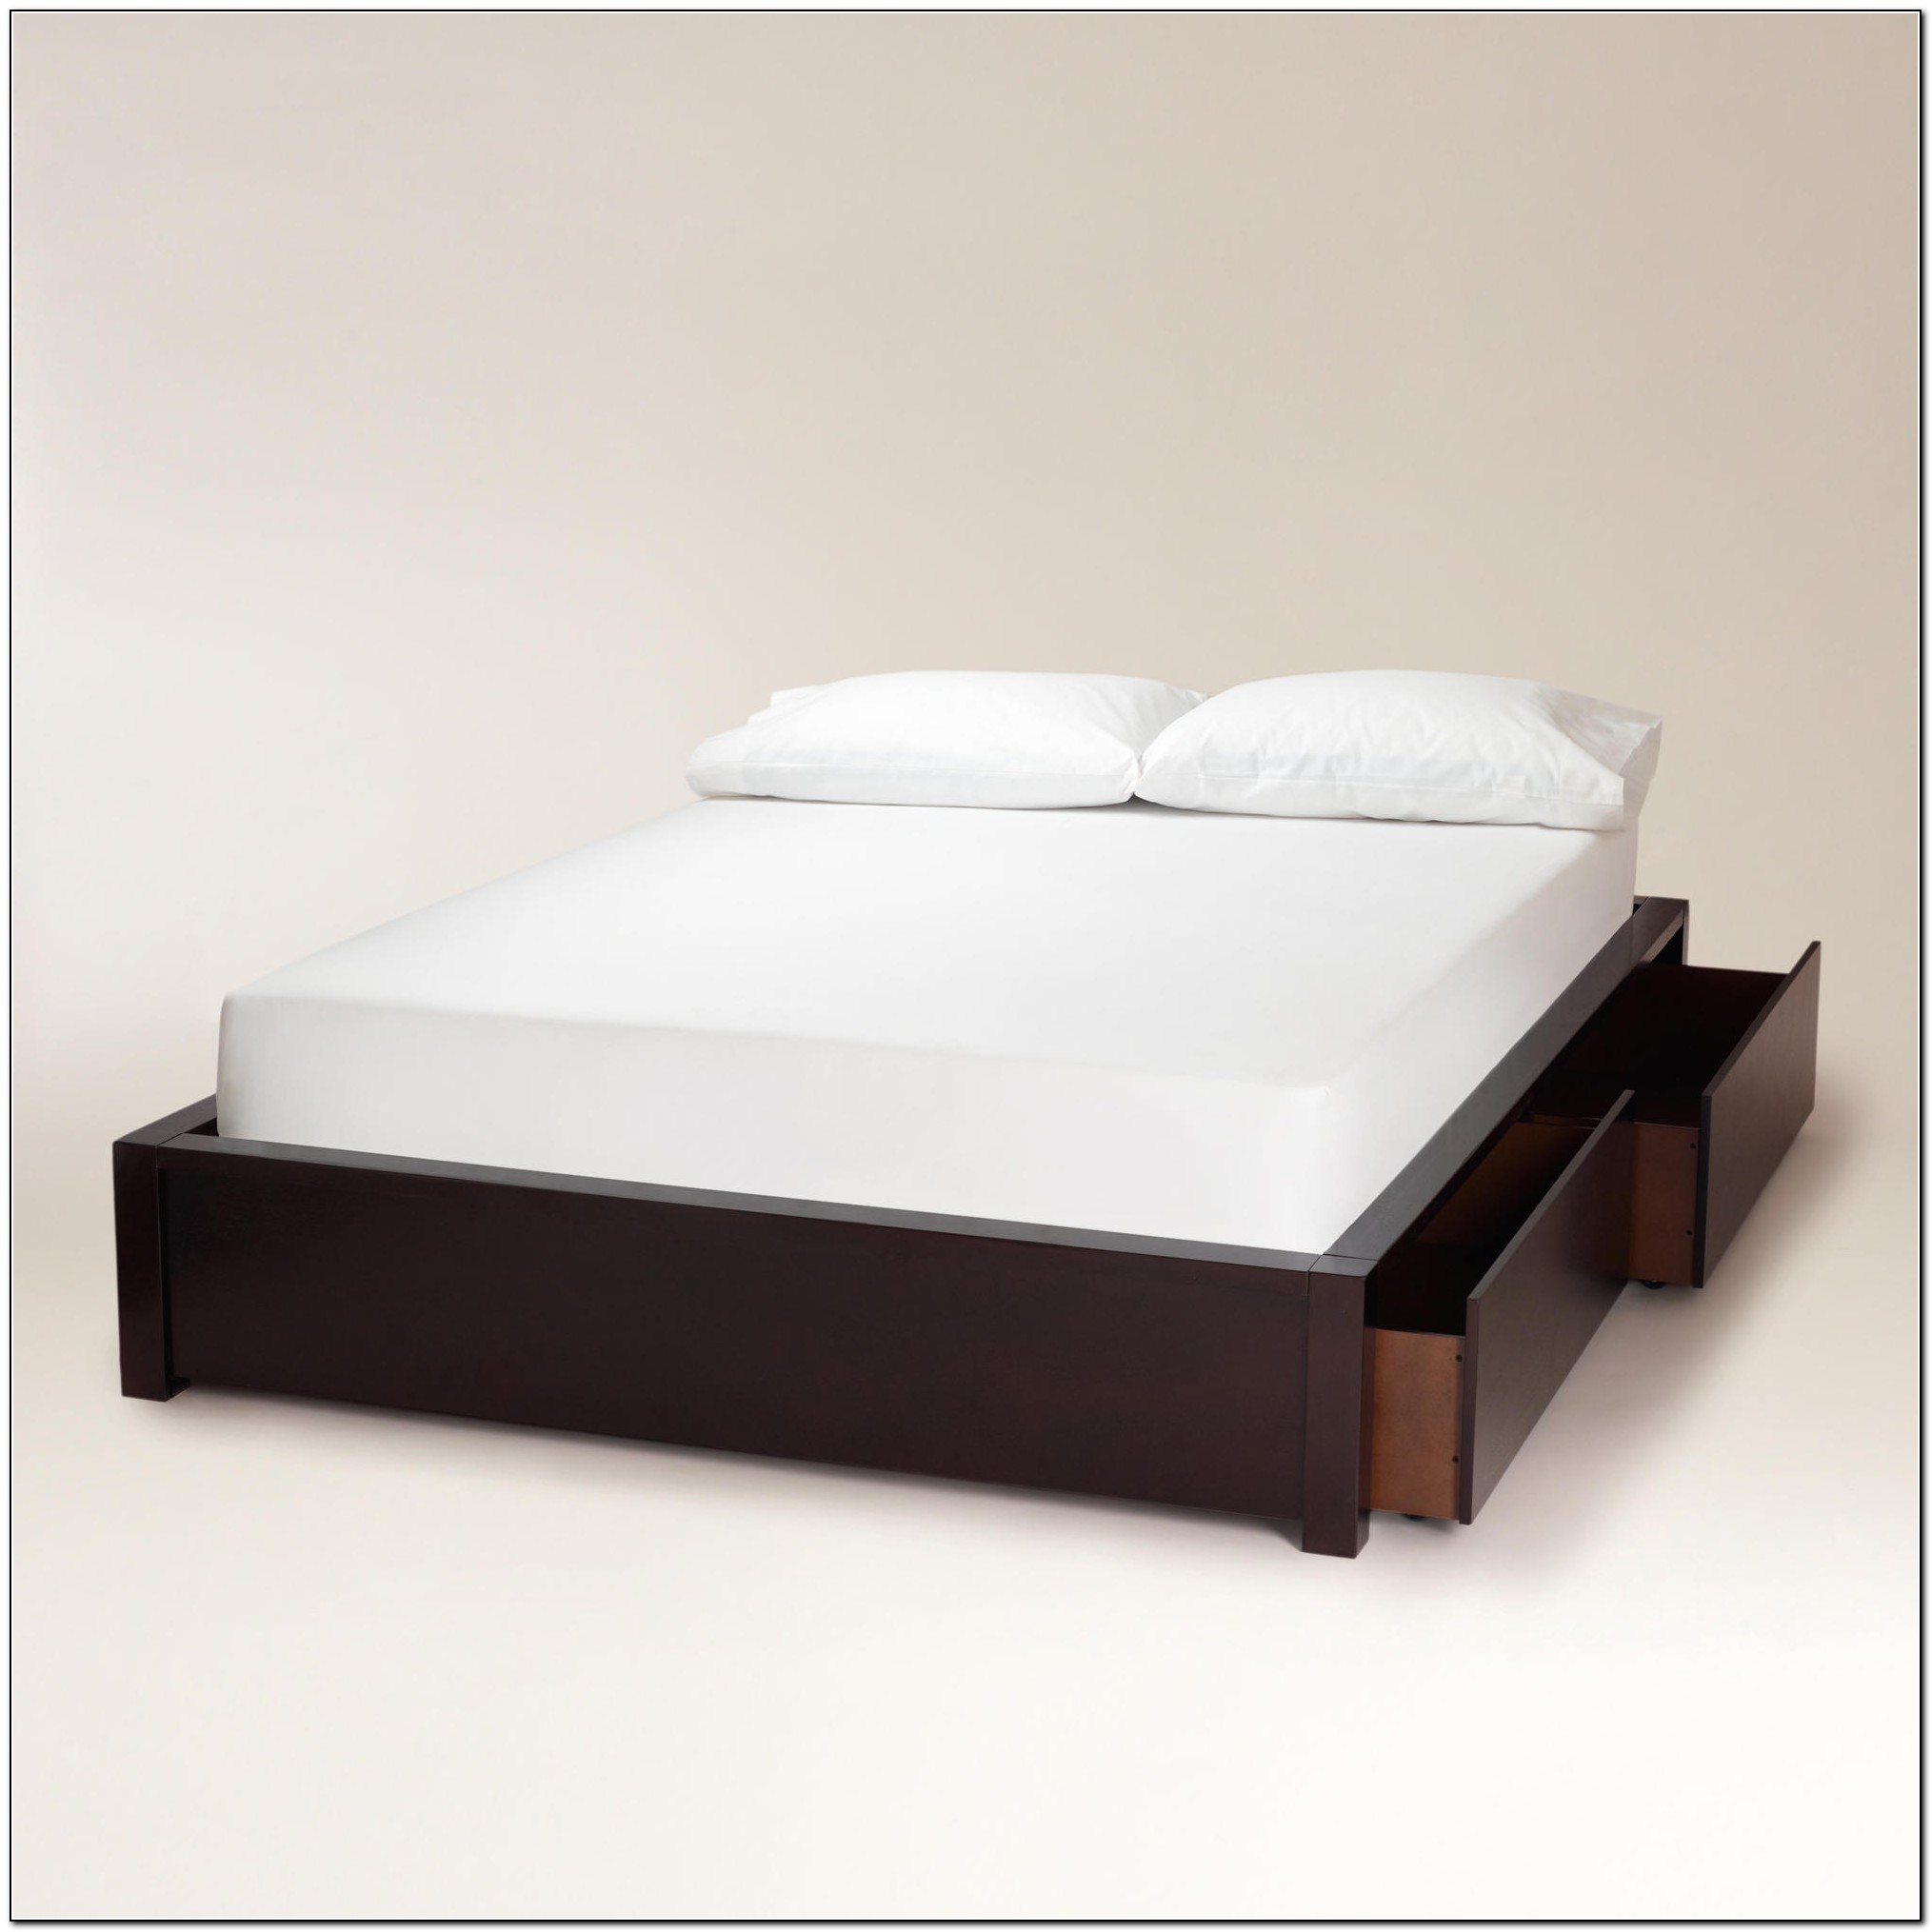 Queen Platform Bed Storage - Beds : Home Design Ideas #6zDAV0dQbx3751